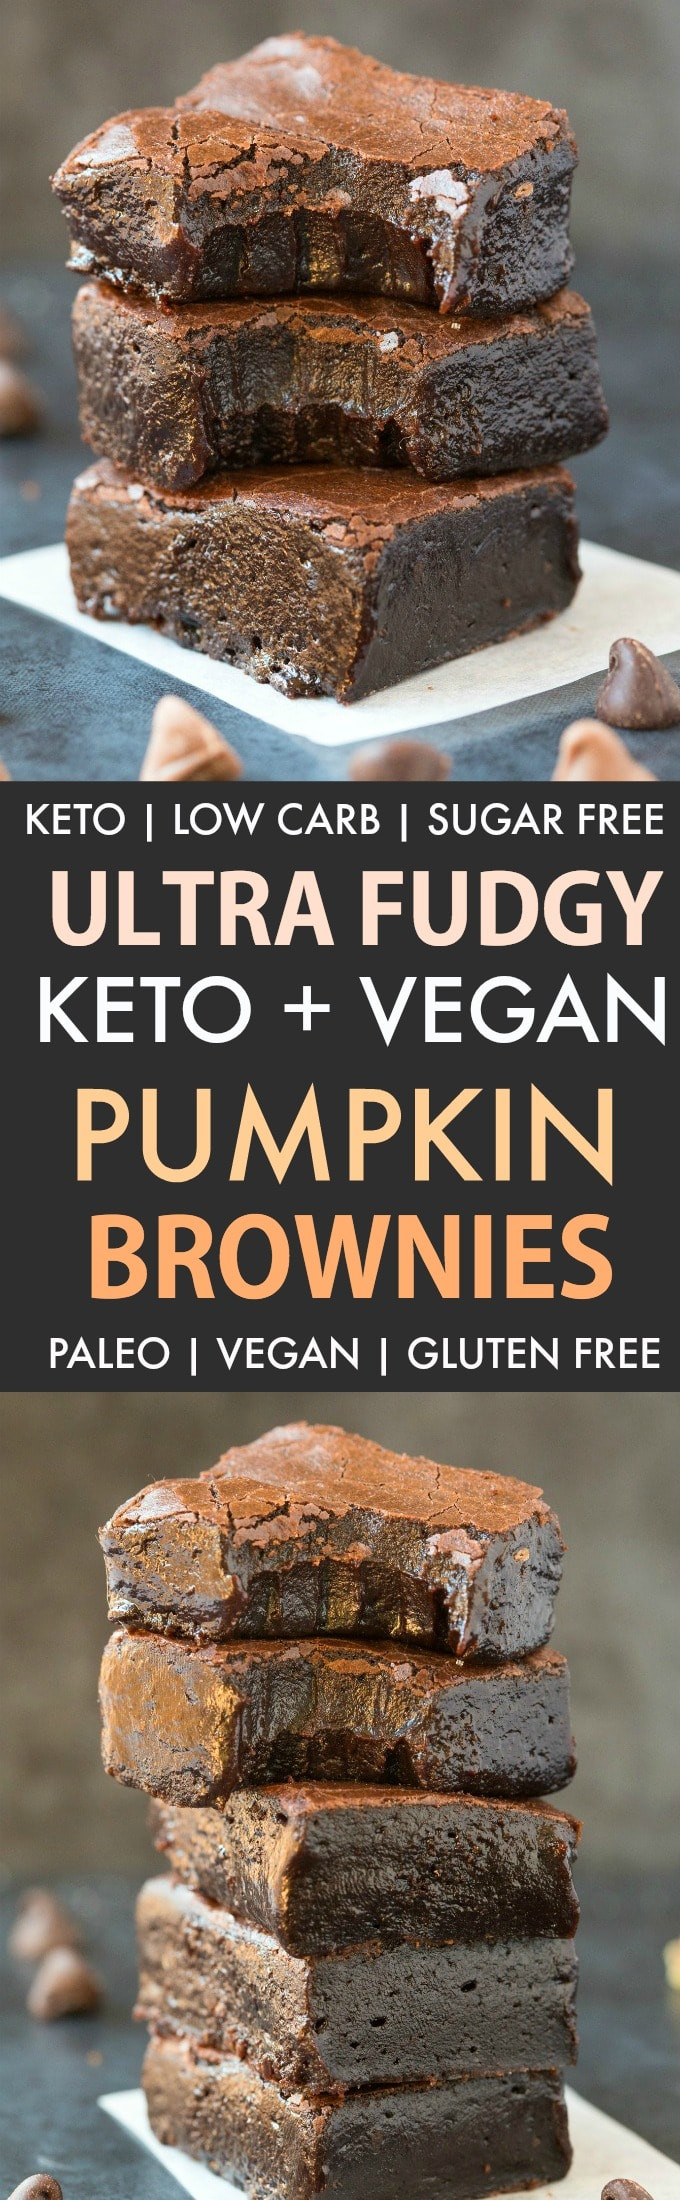 Vegan Keto Pumpkin Recipes
 Fudgy Paleo Vegan Pumpkin Brownies Keto Low Carb